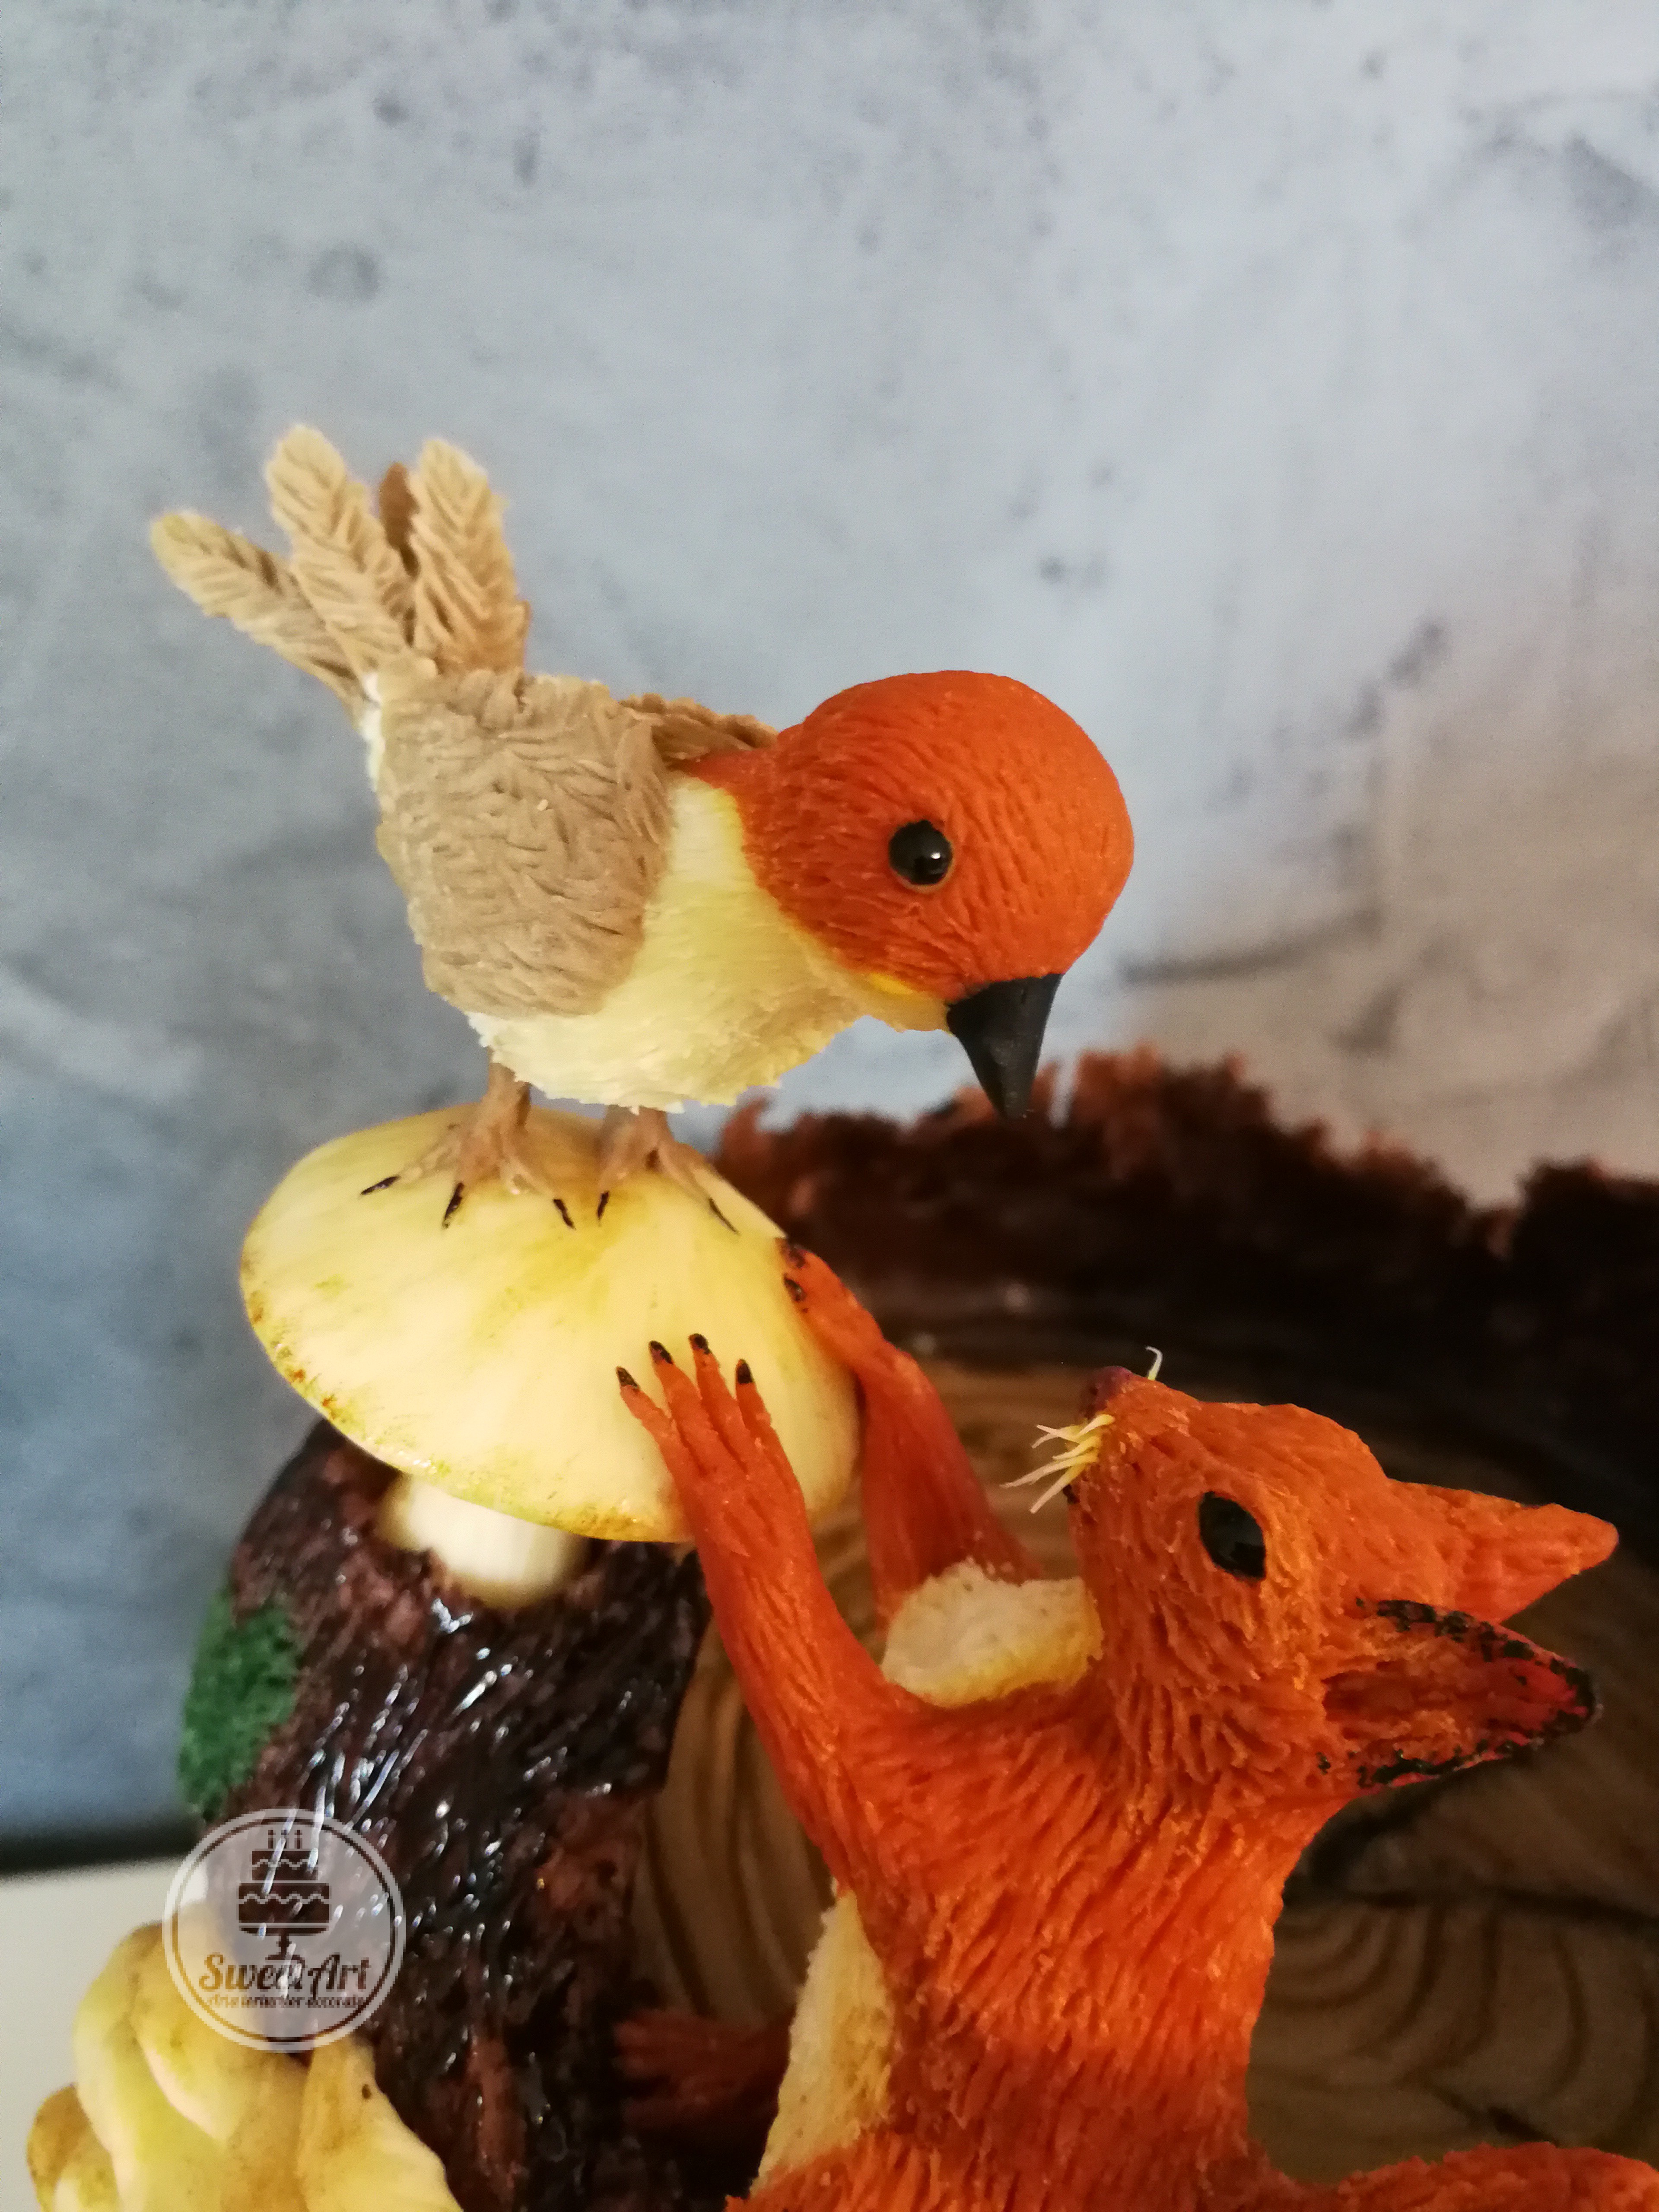 O veveriță curioasă cu o pasăre mică cu cap portocaliu pe o ciupercă amanita porphyria, trunchi de copac cu mușchi